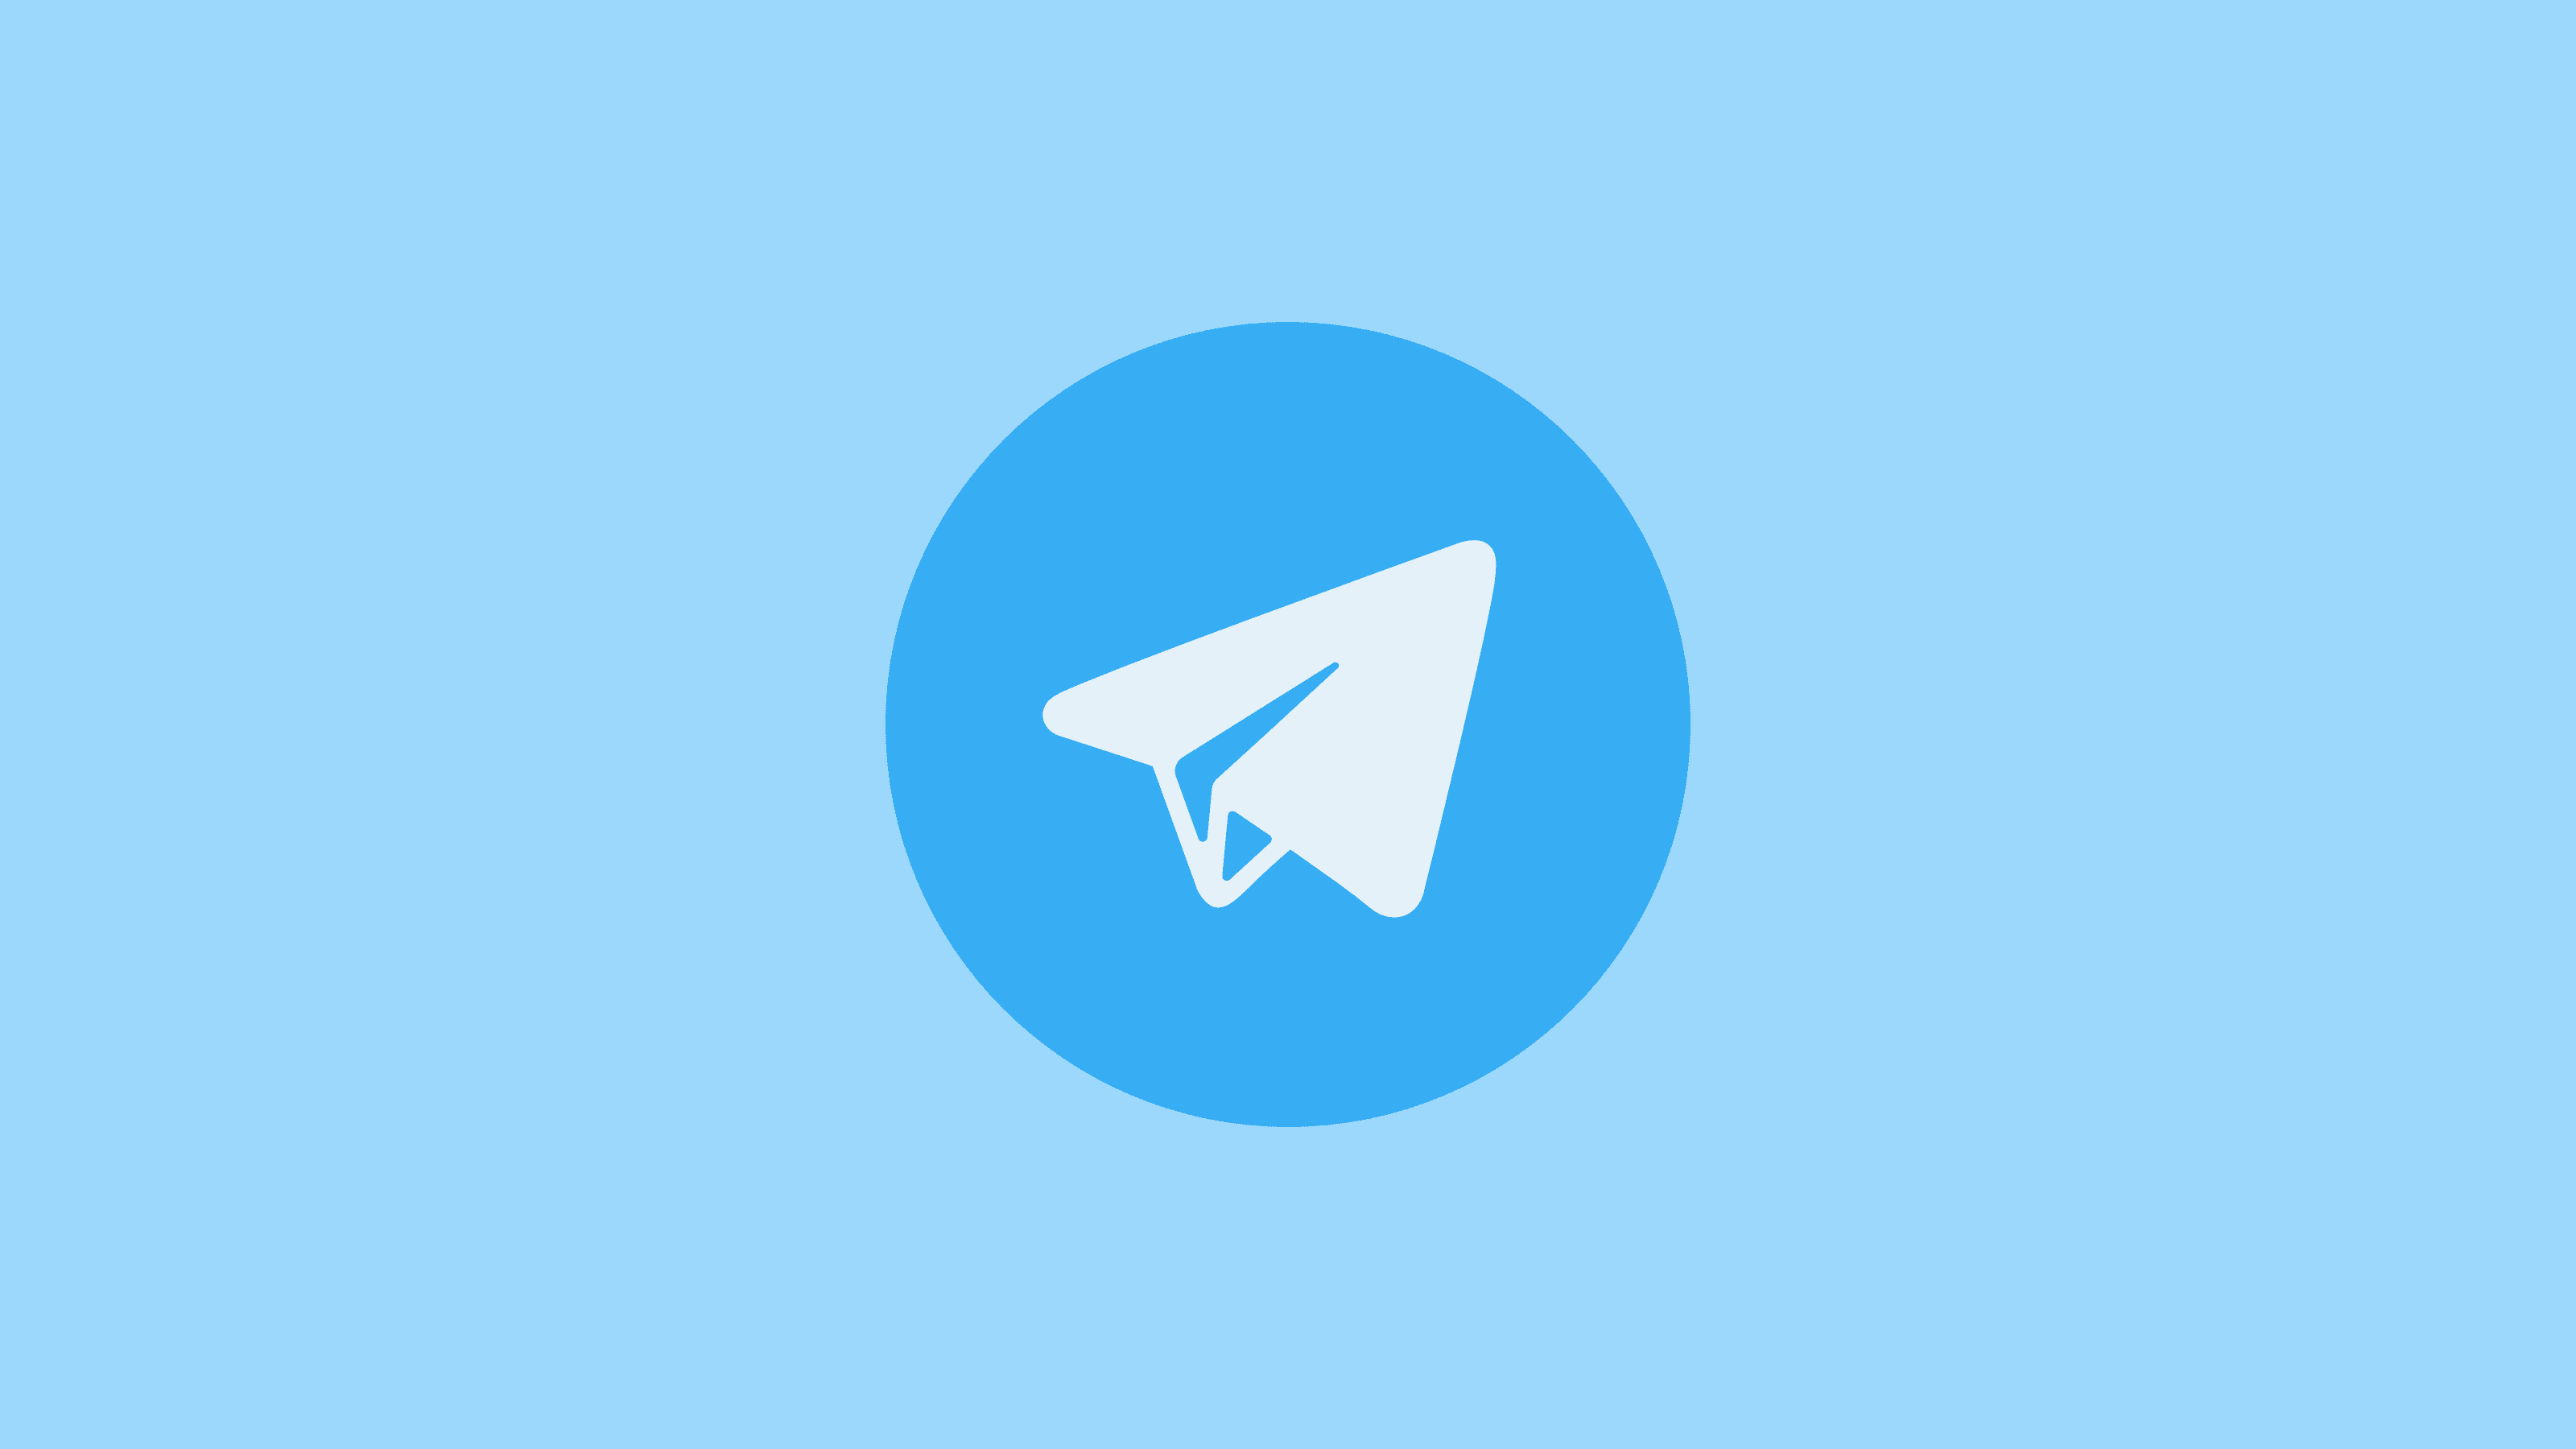 Grupos de Filmes e Series Telegram - Grupos de Telegram